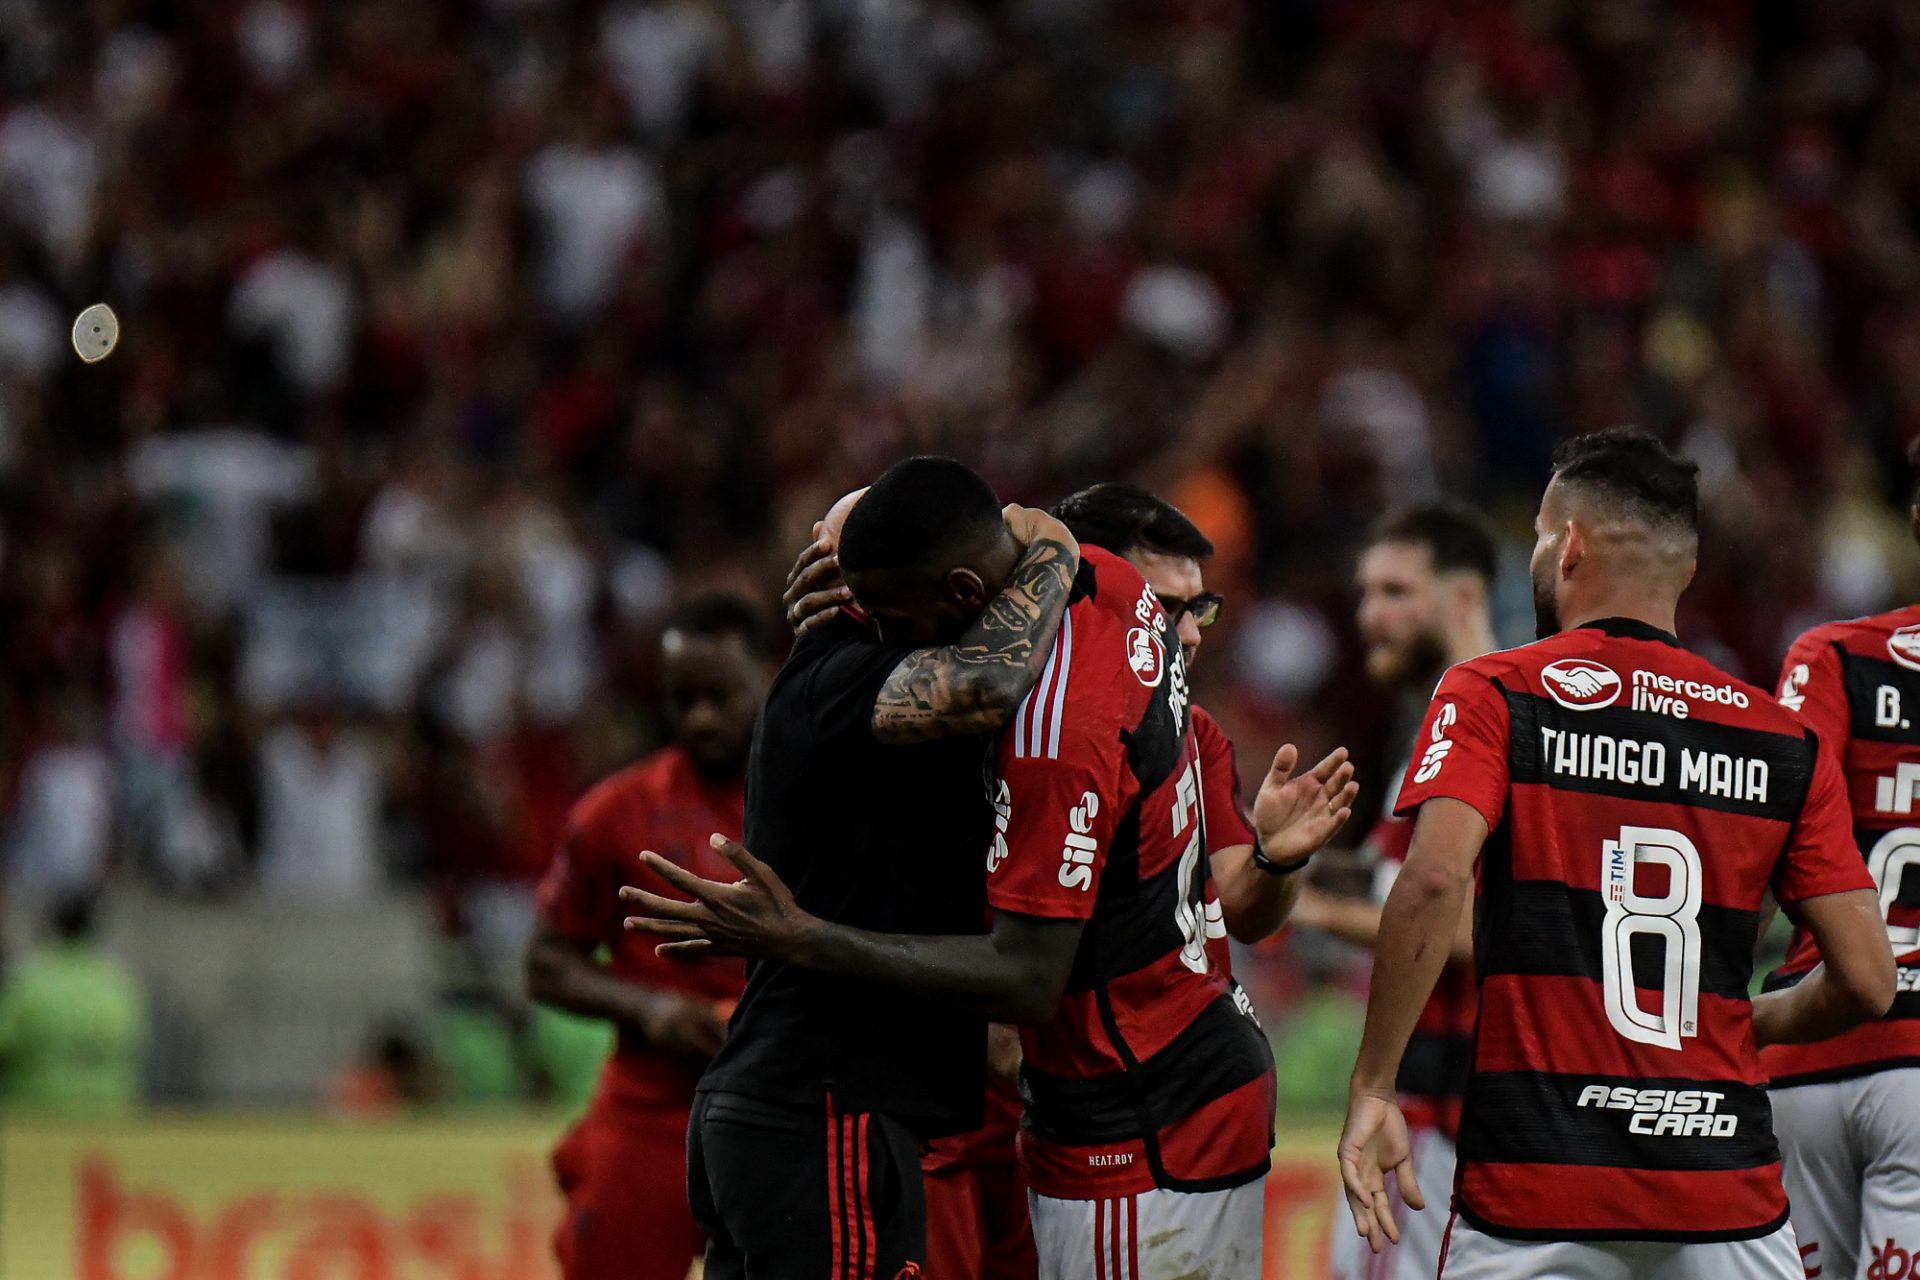 Jogadores do Flamengo comemoram gol com Jorge Sampaoli, técnico da sua equipe durante partida contra o Grêmio no Maracanã - Foto: Thiago Ribeiro/Agif - Agência De Fotografia/Agif - Agência De Fotografia/Estadão Conteúdo